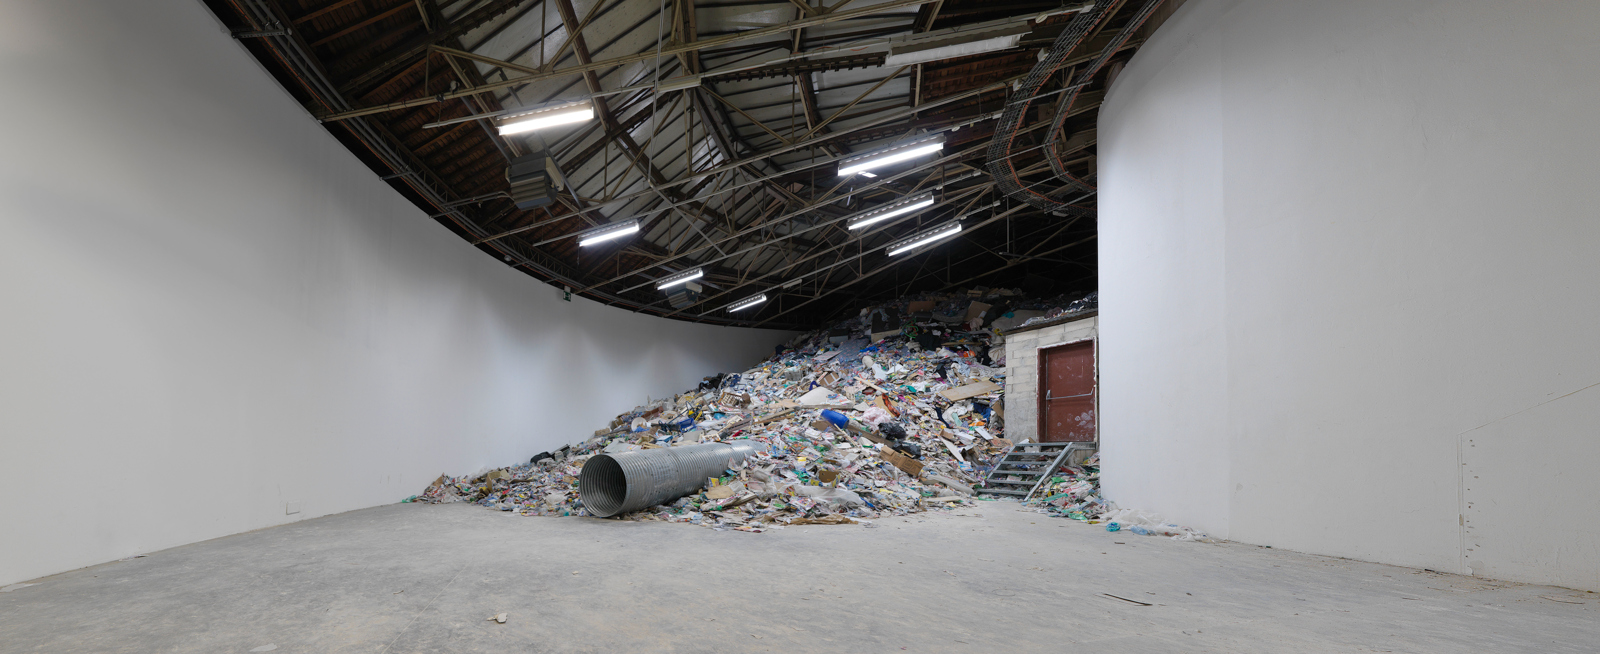 Christoph Büchel / "Dump", installation view, "Superdome", Palais de Tokyo, Paris